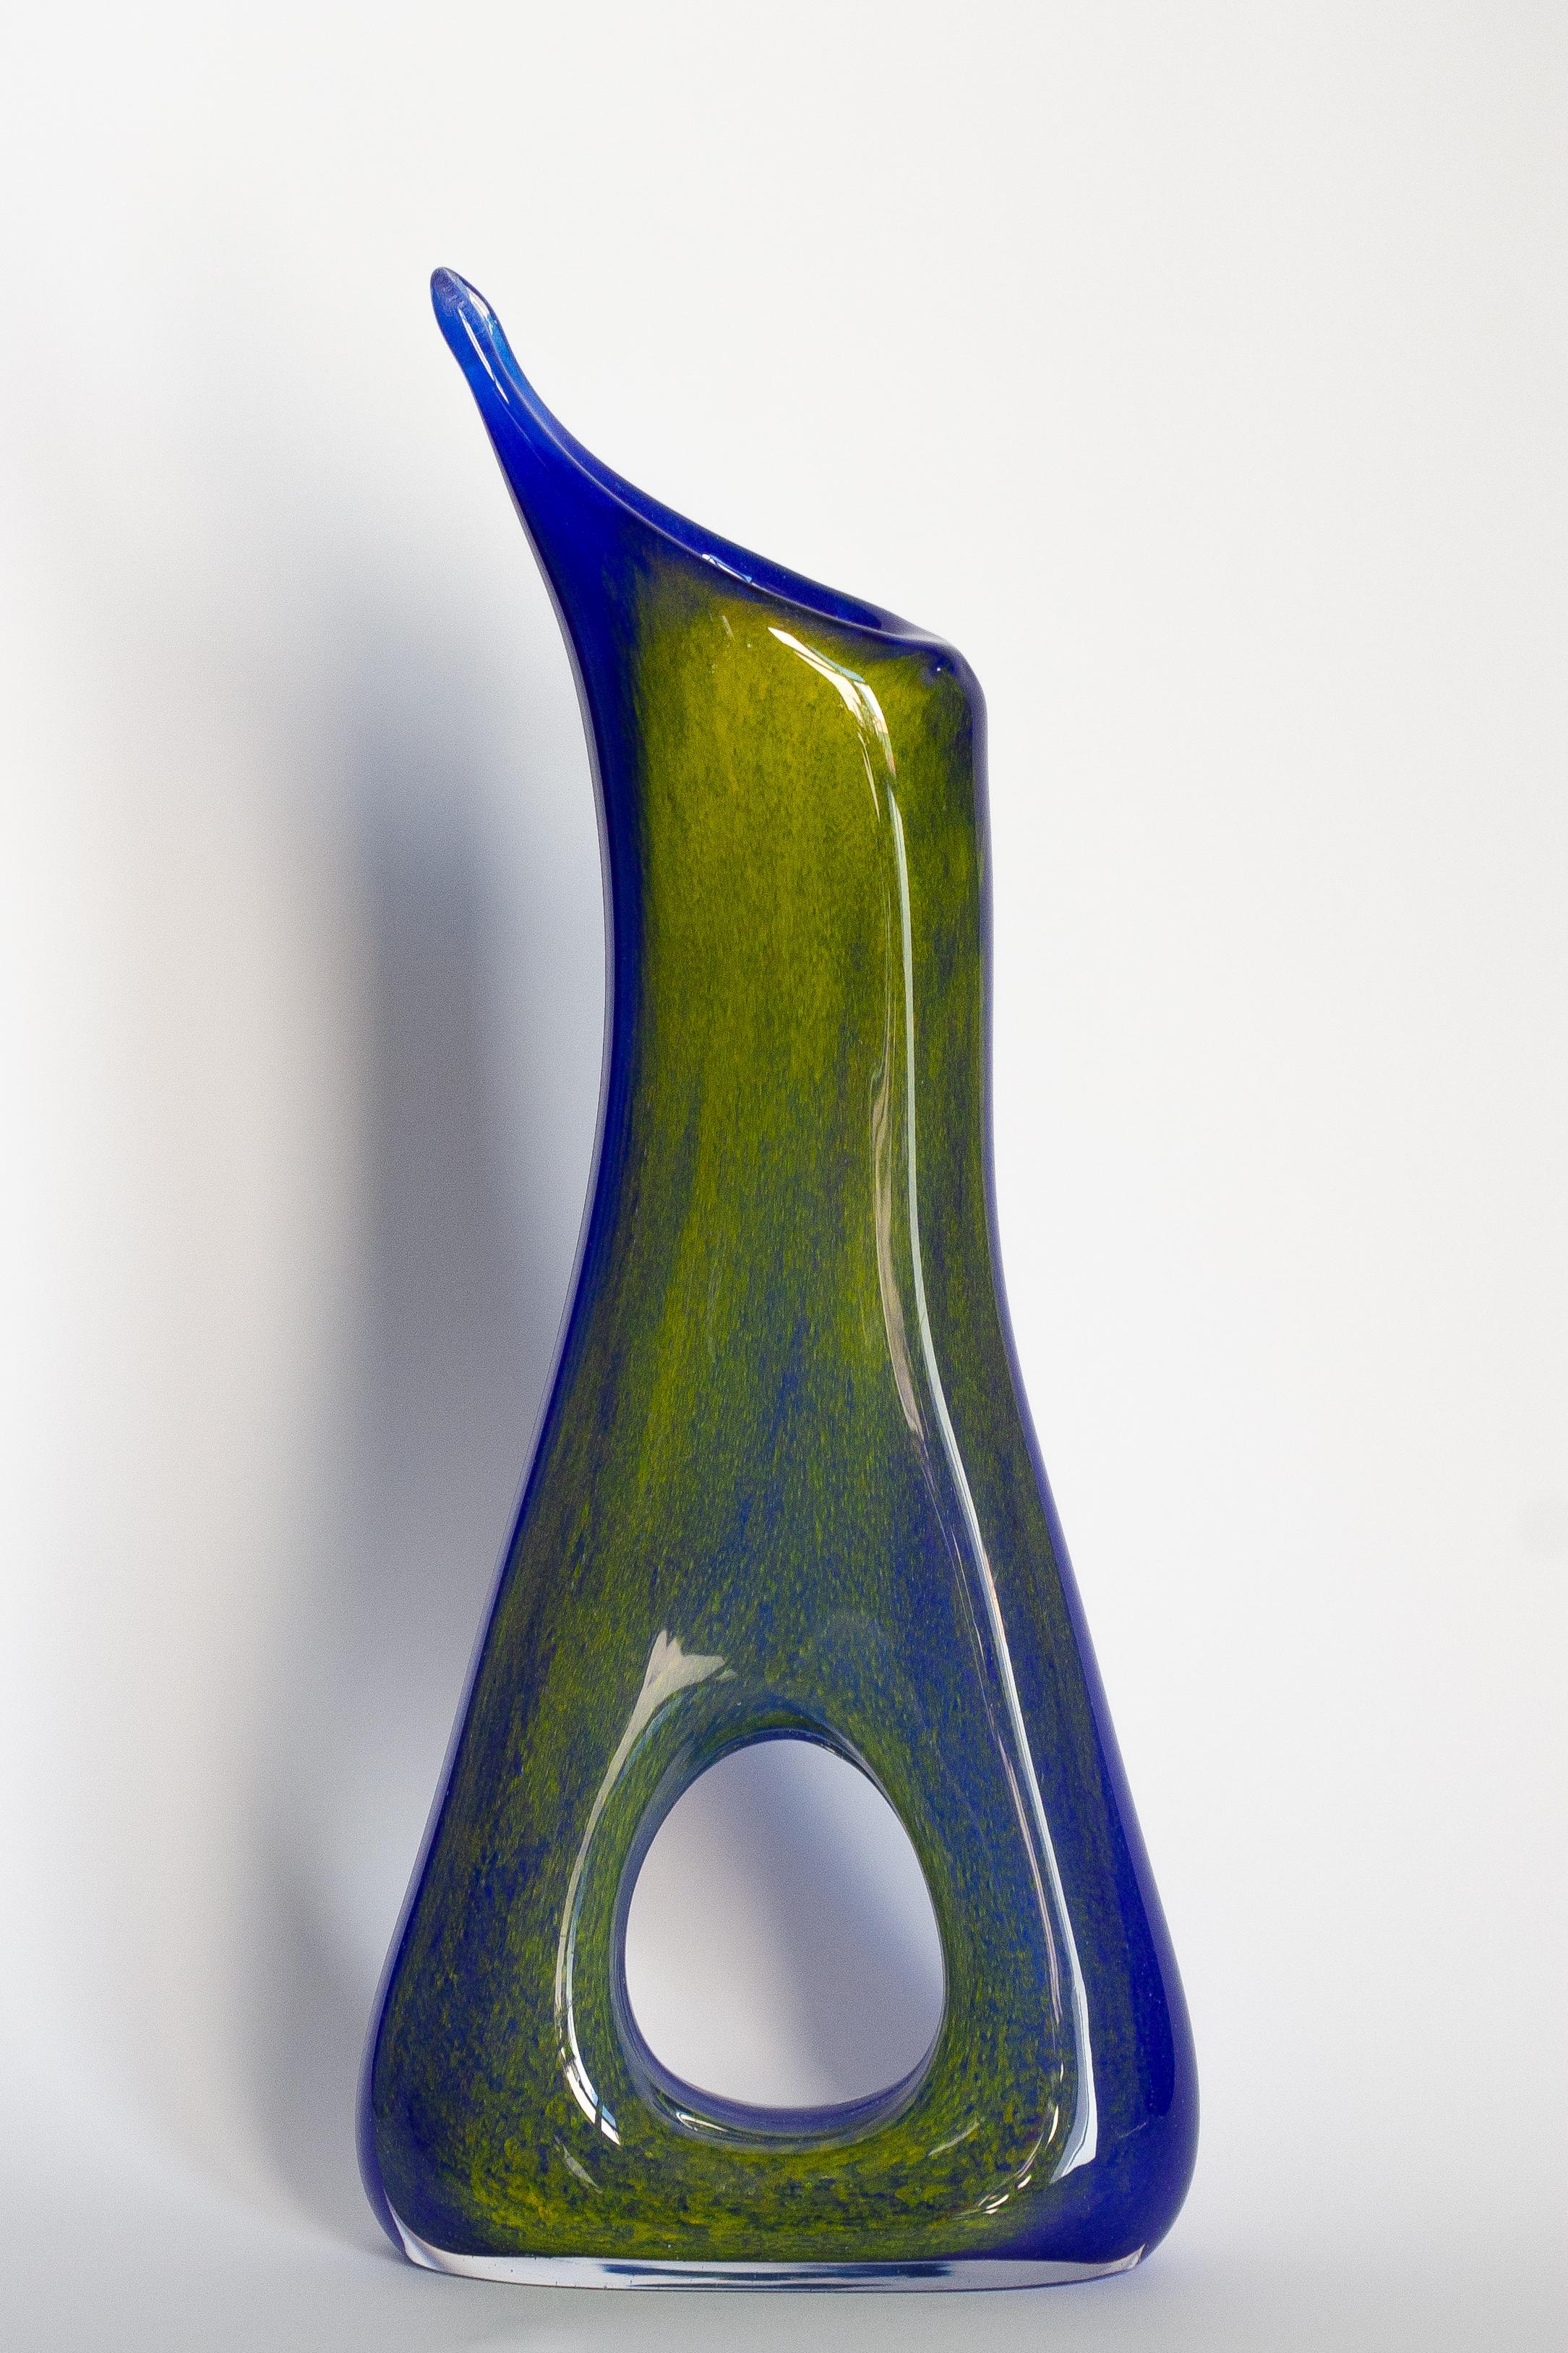 Vase bleu de forme organique étonnante. Produit dans les années 1960.
Verre en parfait état. Le vase semble avoir été sorti de sa boîte.

Pas d'accrocs, de défauts, etc. La surface extérieure en relief, l'intérieur lisse. Vase en verre épais,